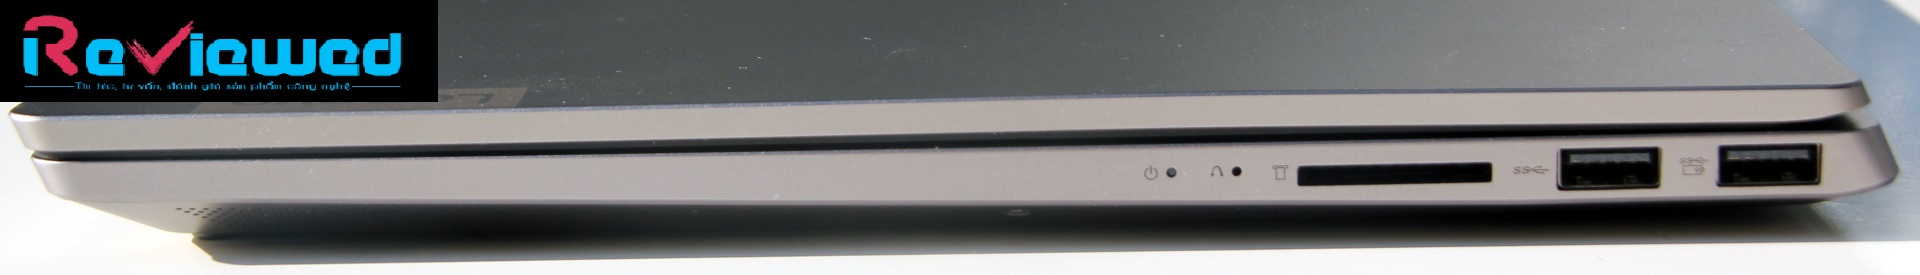 Đánh giá Lenovo Ideapad S540-15IWL: Một chiếc máy khá toàn diện !, trang tư vấn laptop